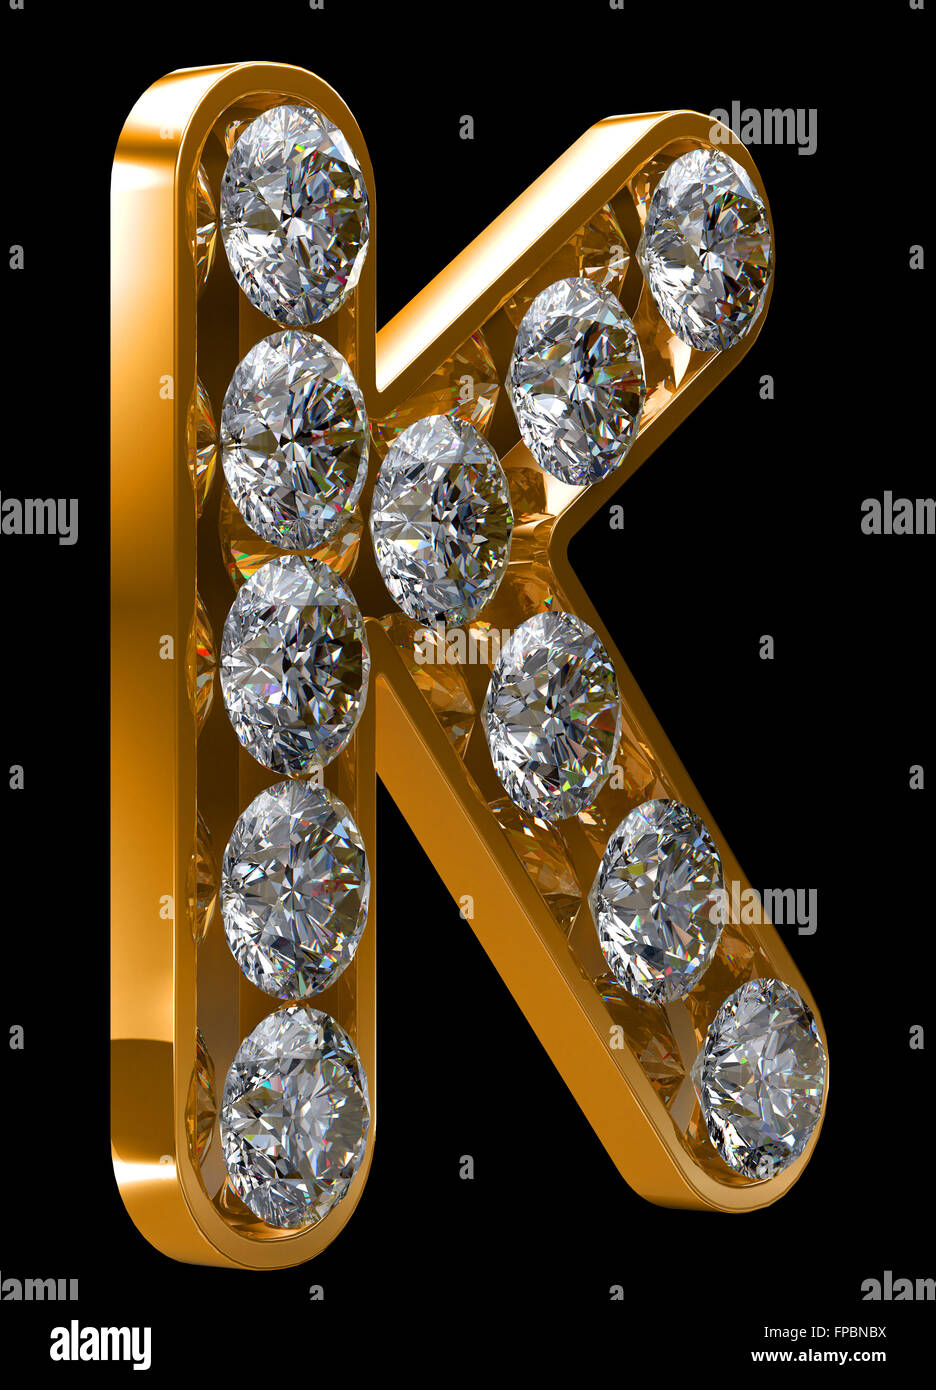 ejemplo baños Llorar K diamonds fotografías e imágenes de alta resolución - Alamy